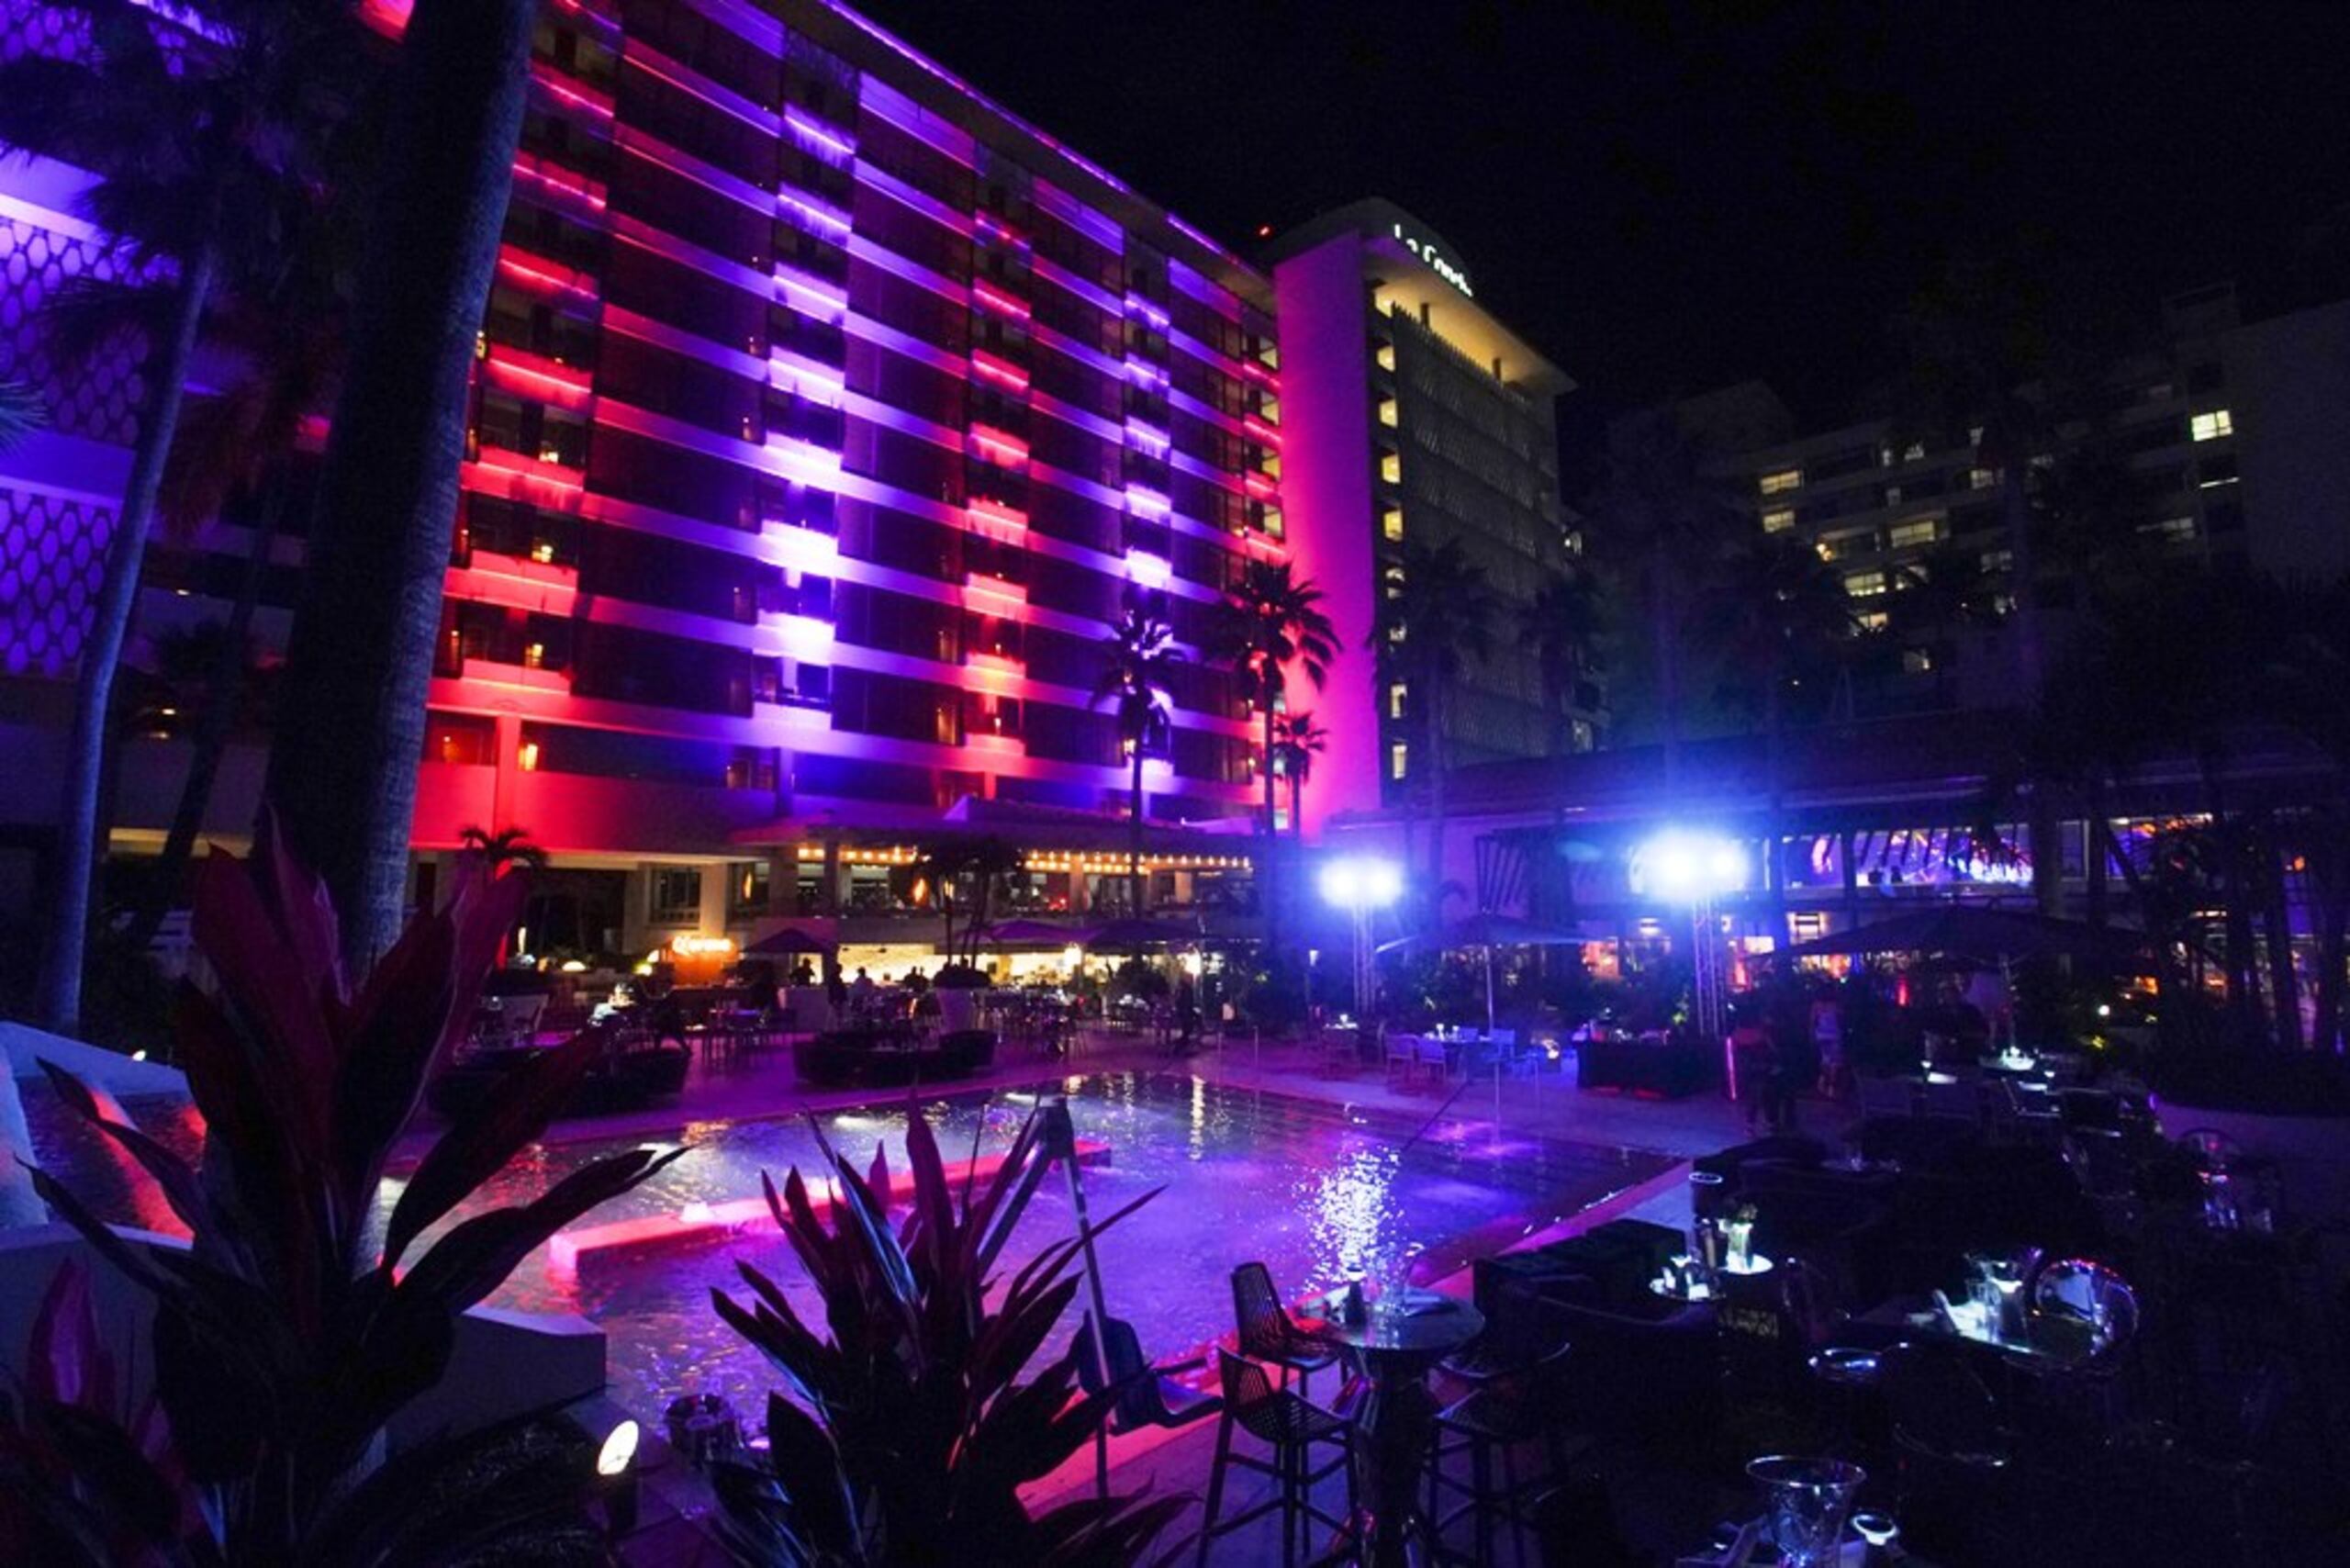 La Concha Resort llevará a cabo el fin de semana “One Hot Summer Weekend”.